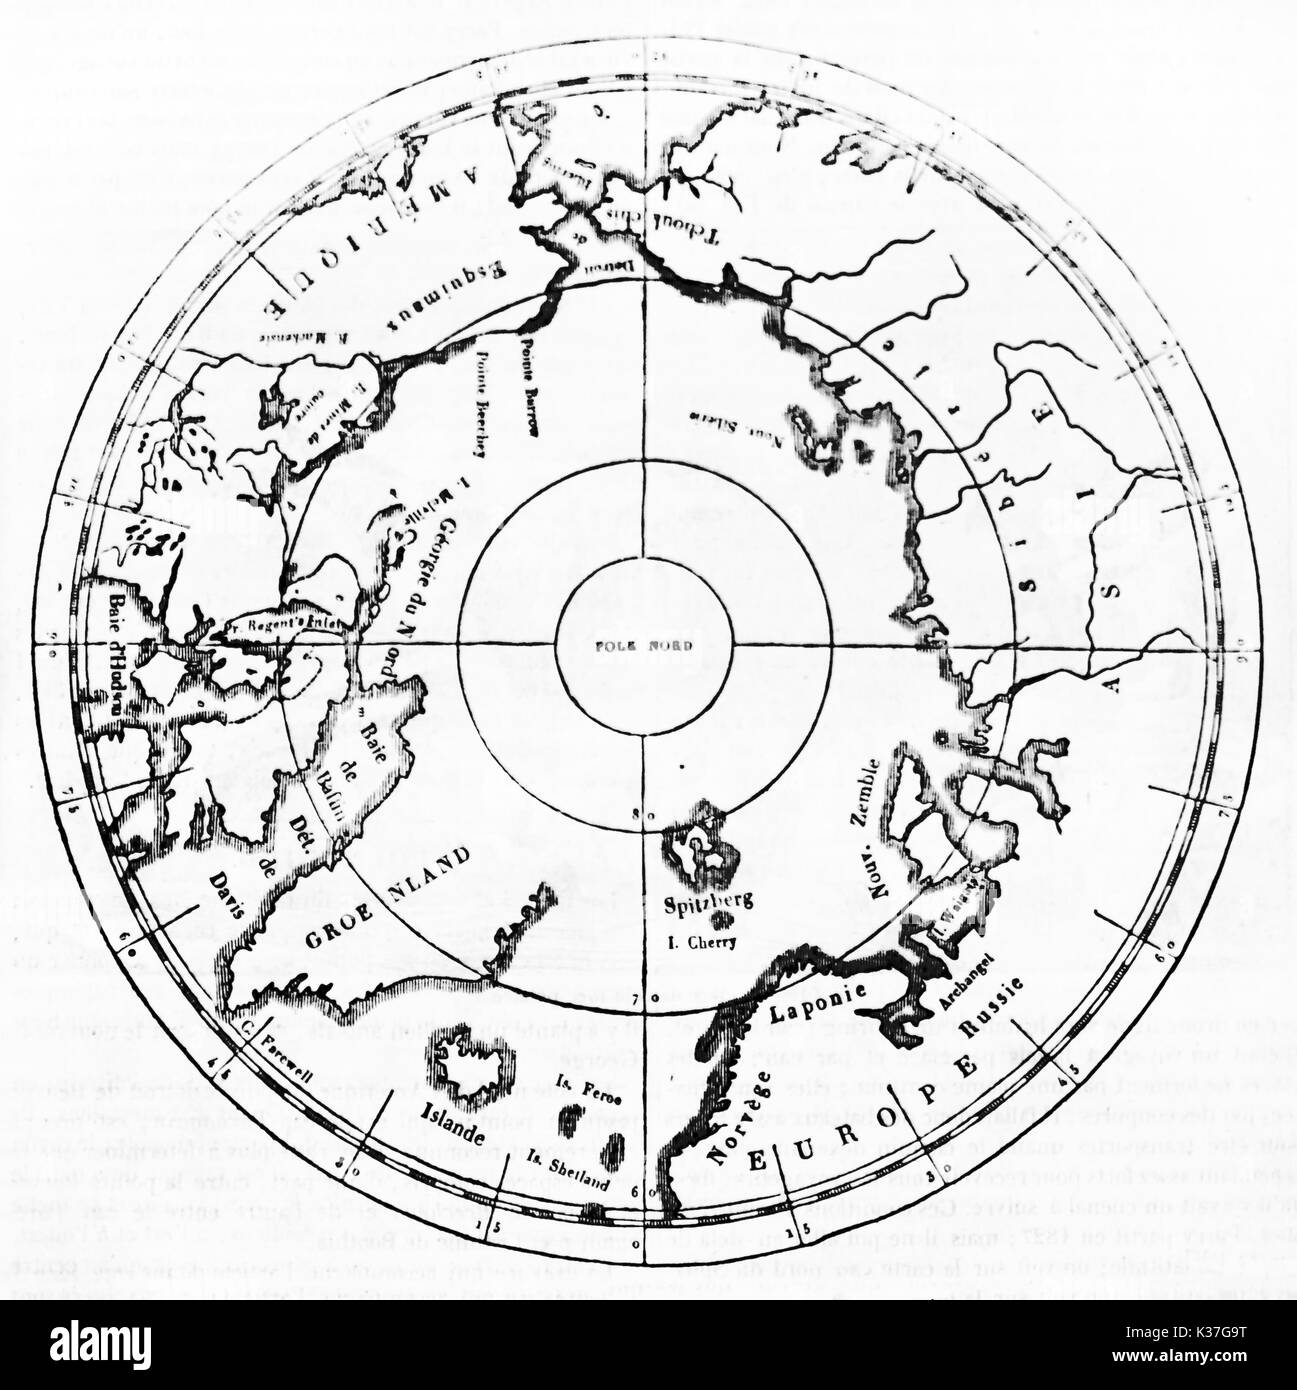 Isolato mappa vecchia del Polo Nord. Vecchia illustrazione di autore non identificato, pubblicato il Magasin pittoresco, Parigi, 1834 Foto Stock